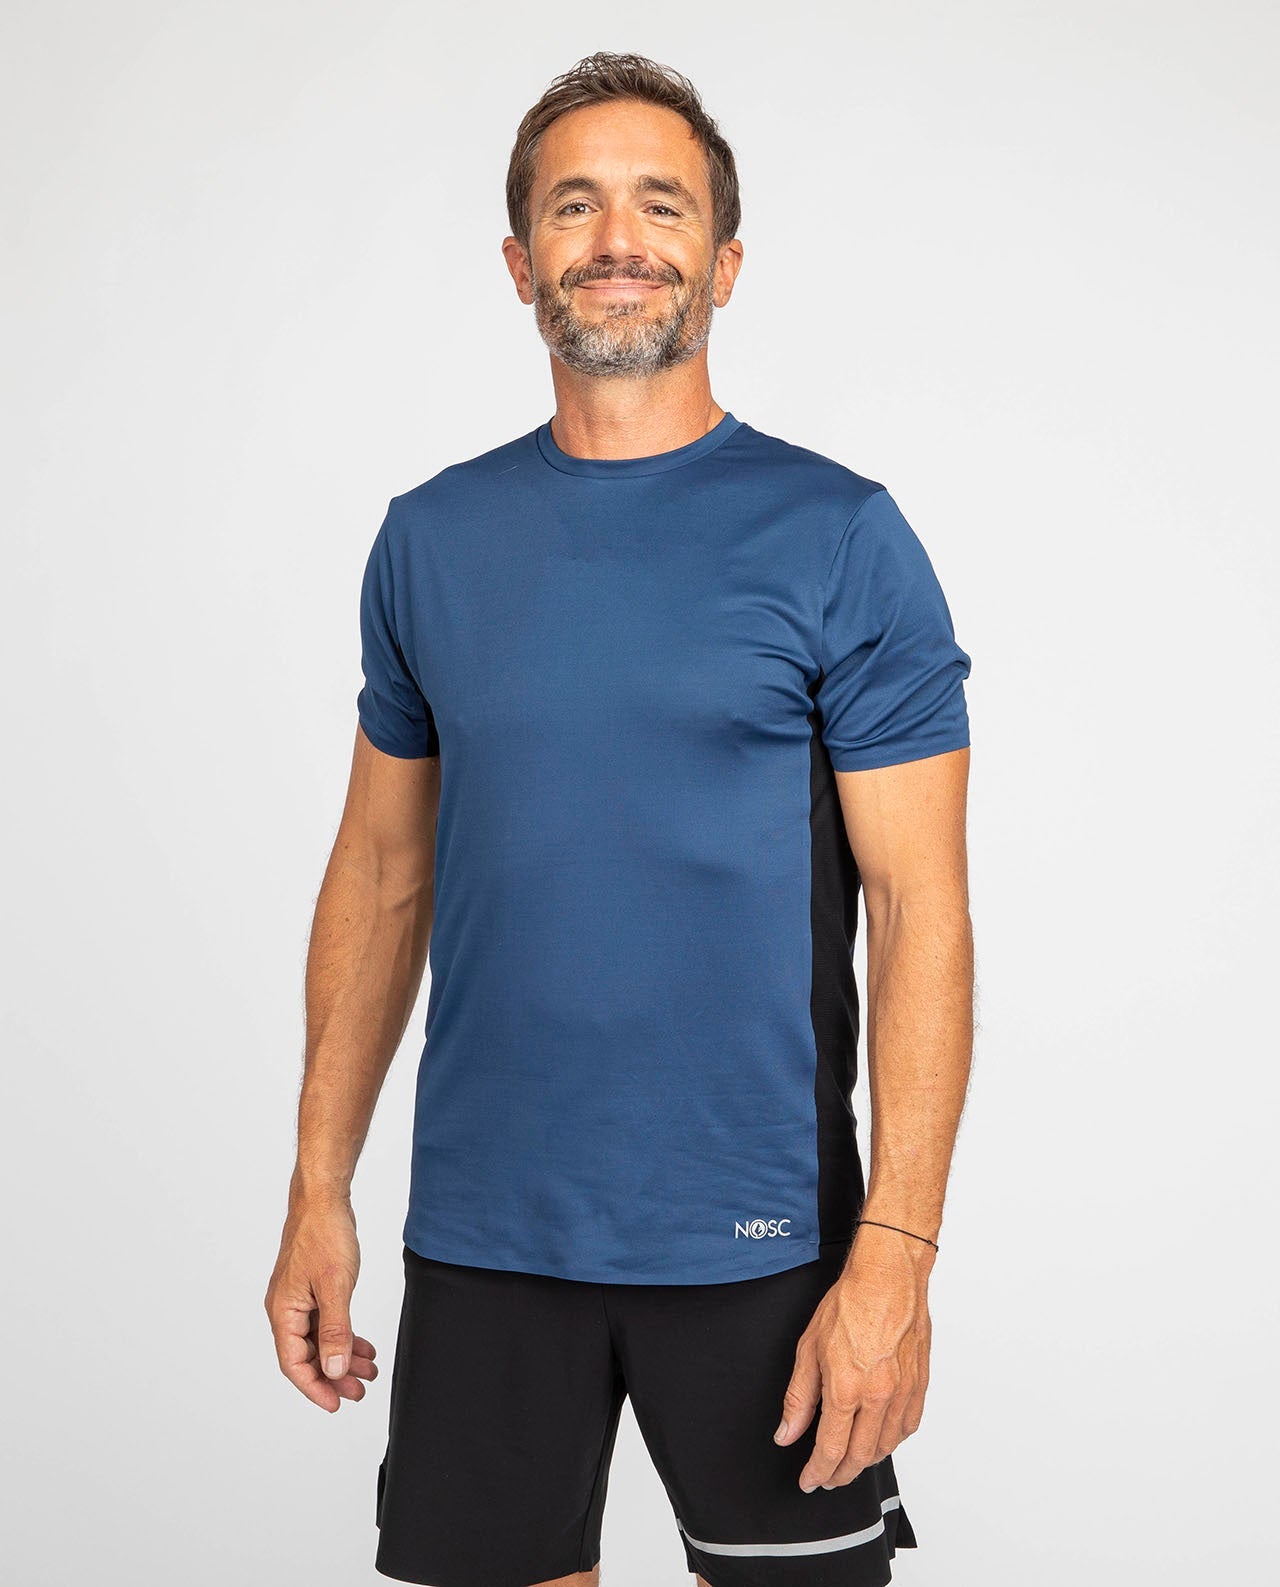 marché commun nosc t-shirt sport homme respirant recyclé fabriqué en Europe éco-responsable éthique bleu